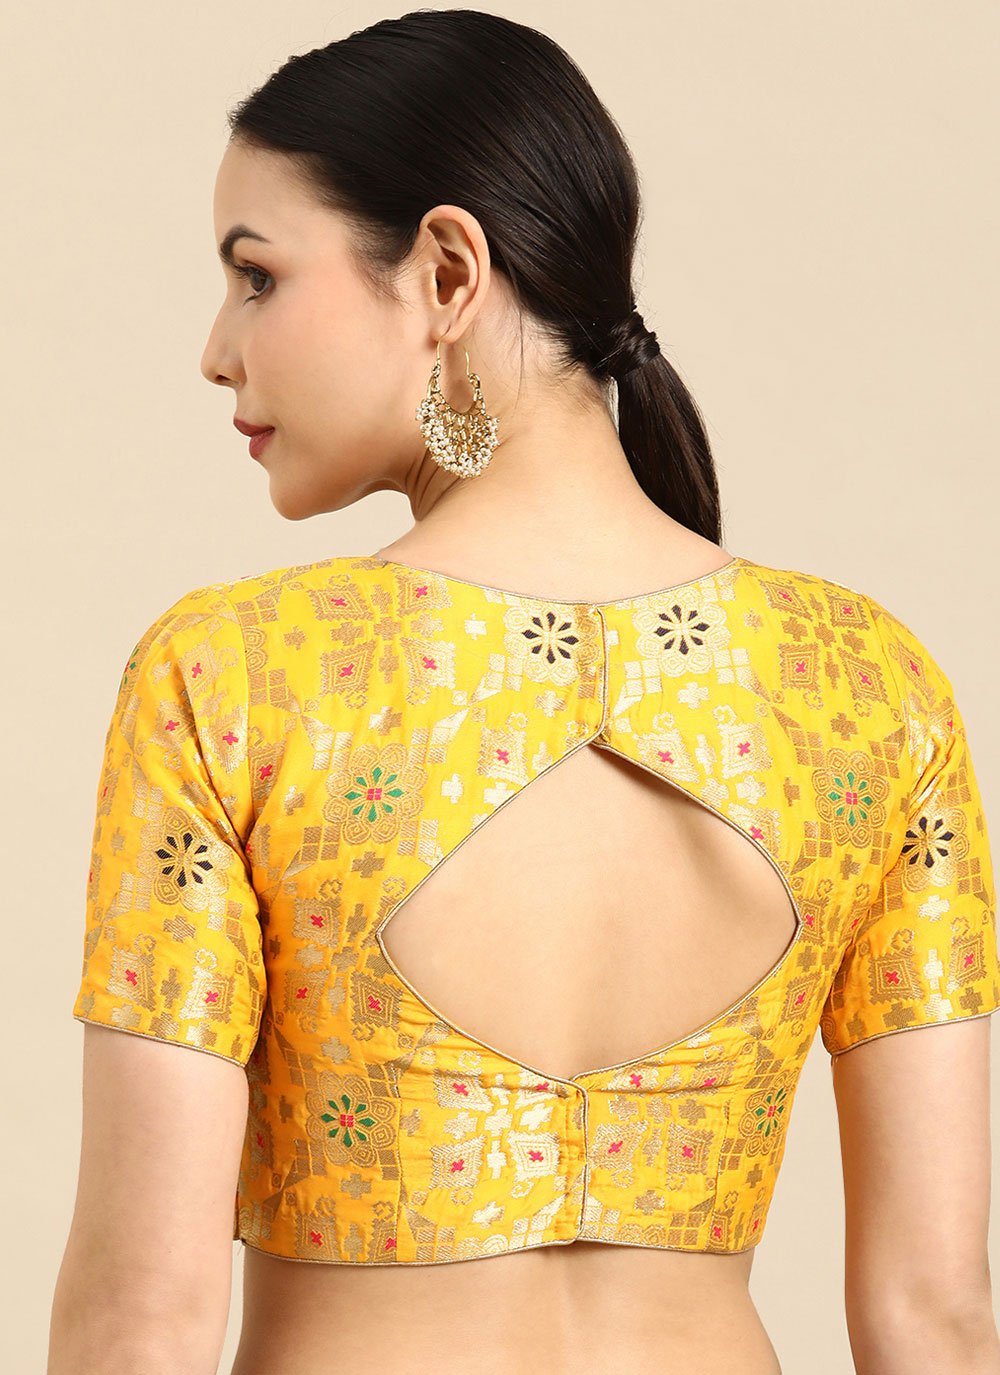 Designer Blouse Banarasi Jacquard Yellow Weaving Blouse